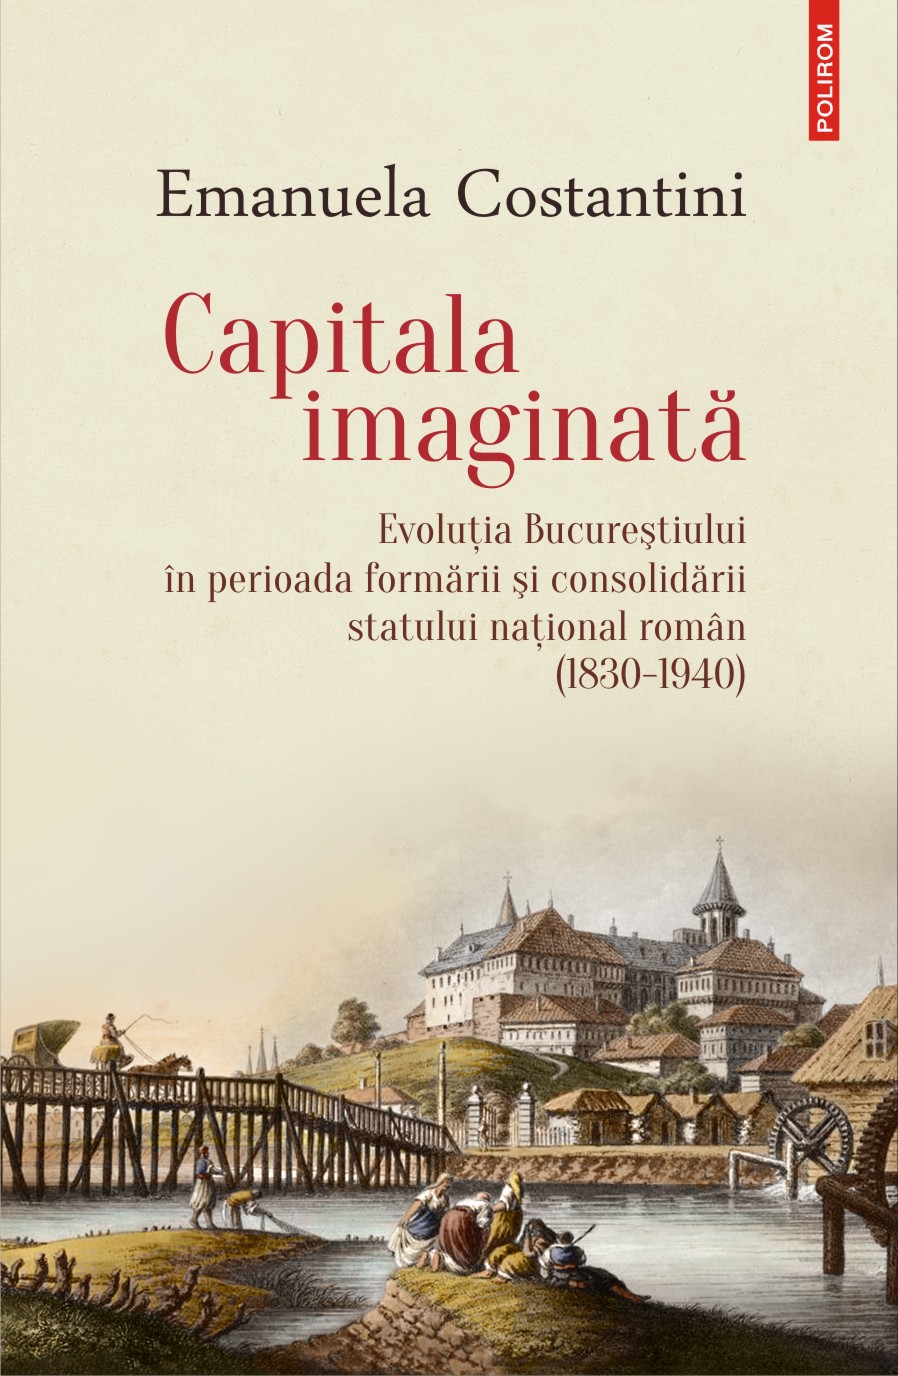 Capitala imaginata | Emanuela Costantini arhitectura 2022